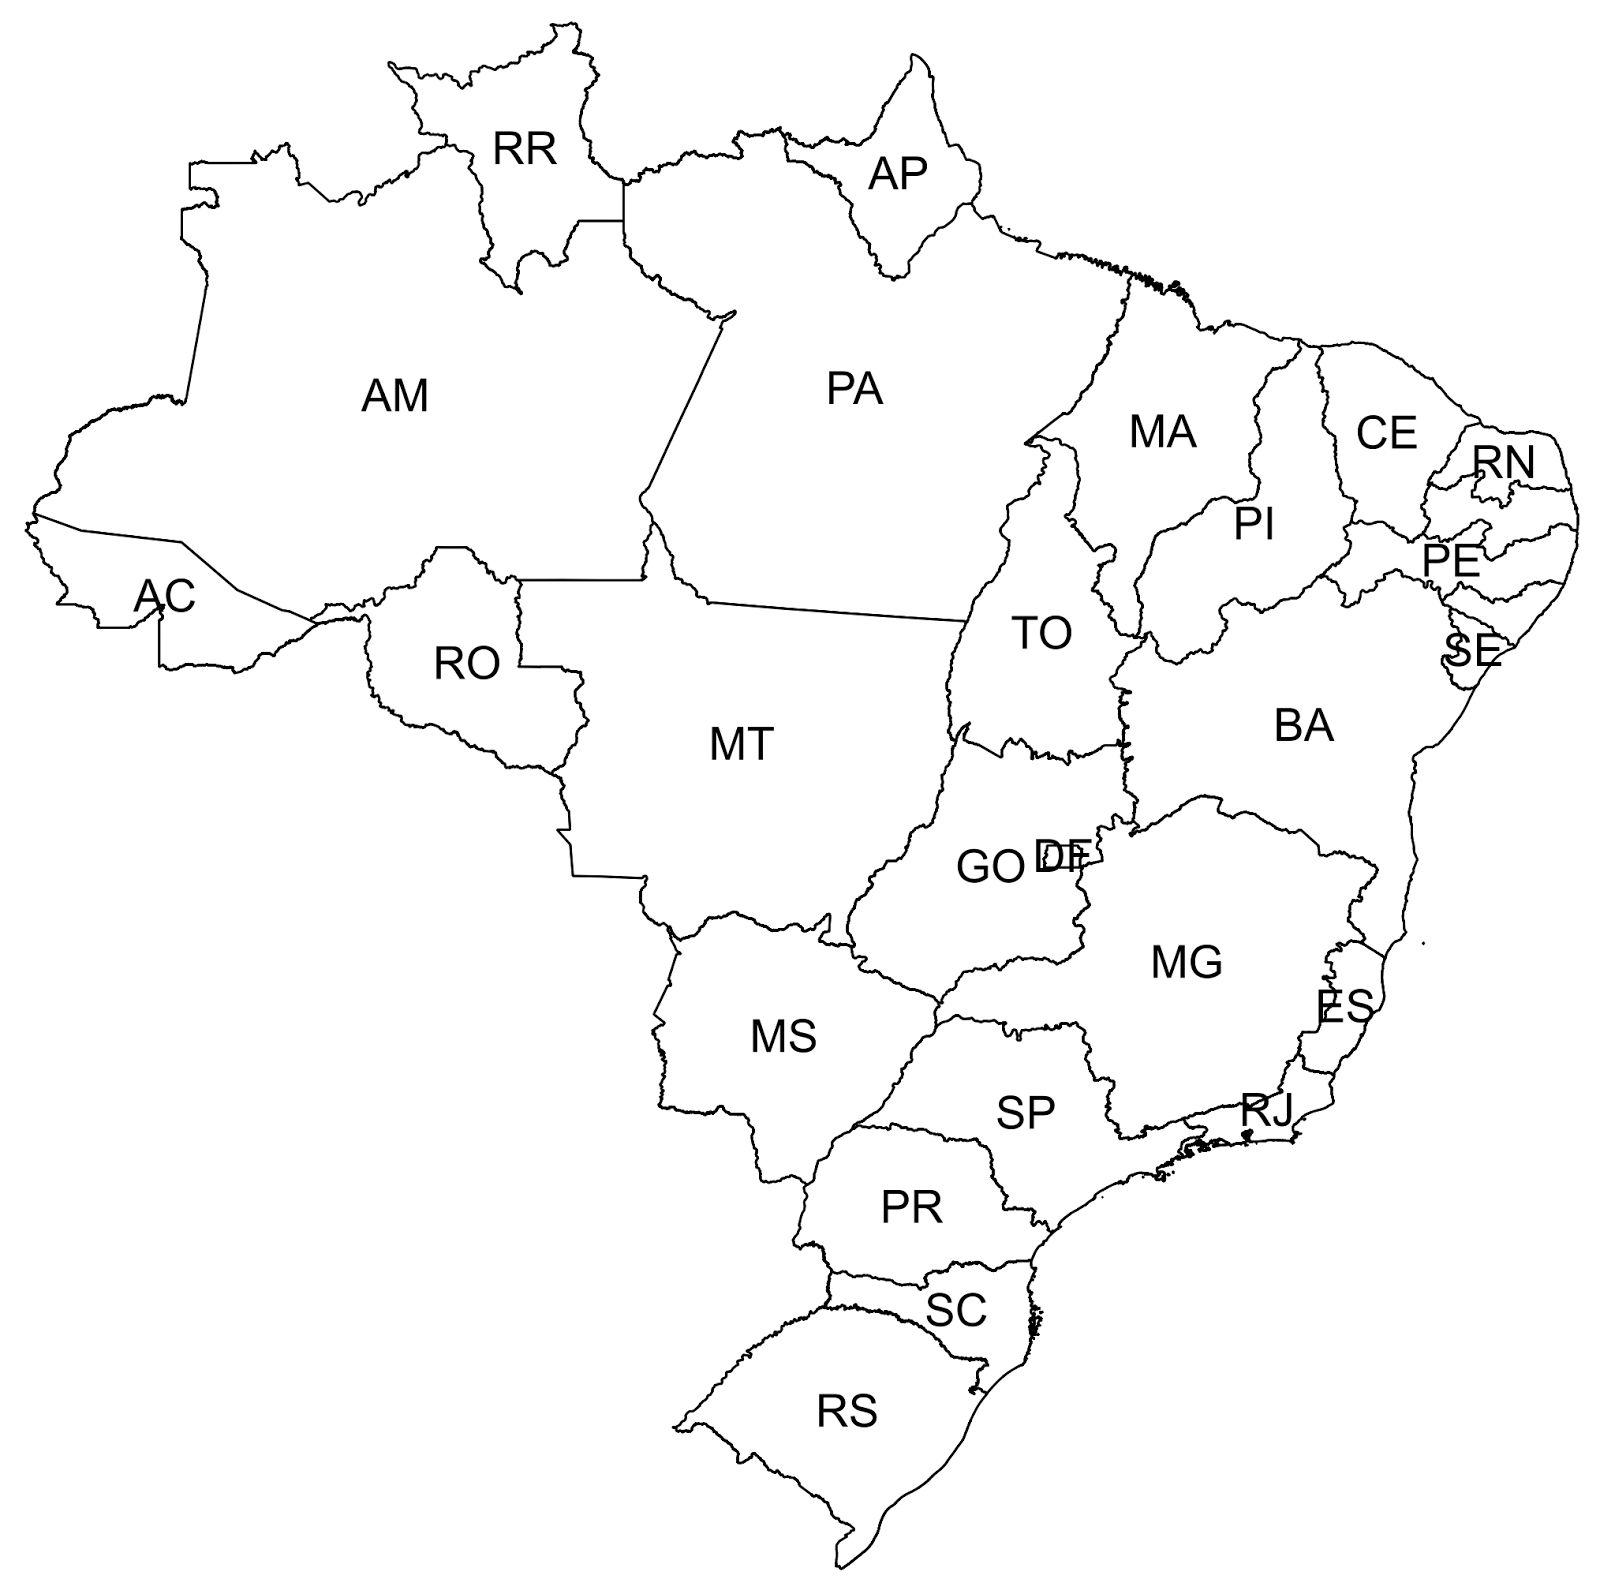 Mapa Do Brasil Para Colorir Nomes Dos Estados E Capita Images